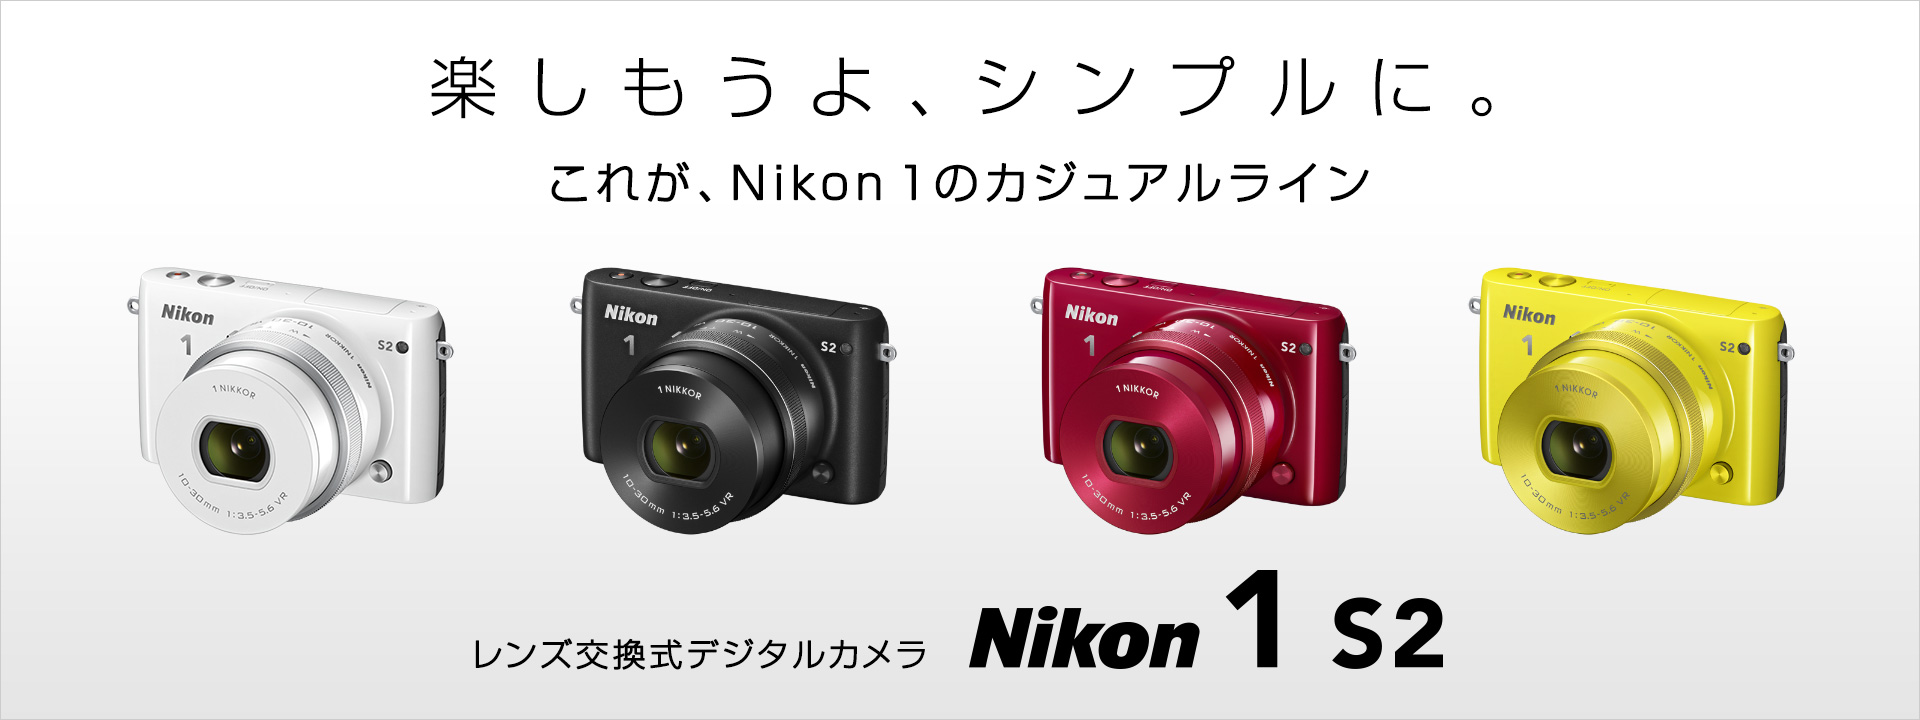 カメラ デジタルカメラ Nikon 1 S2 - 概要 | ミラーレスカメラ | ニコンイメージング